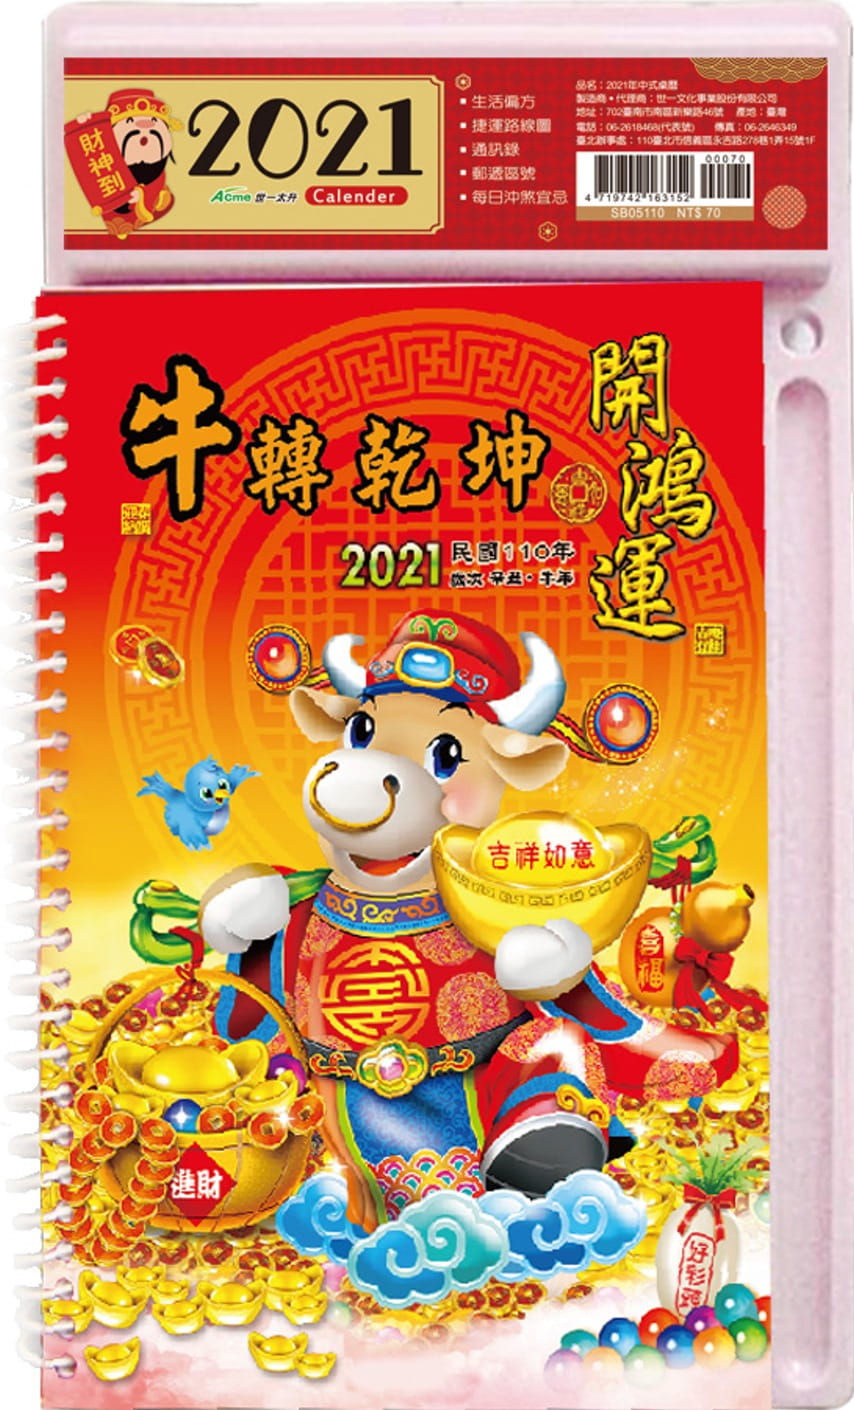 2021年中式桌曆(牛轉乾坤)